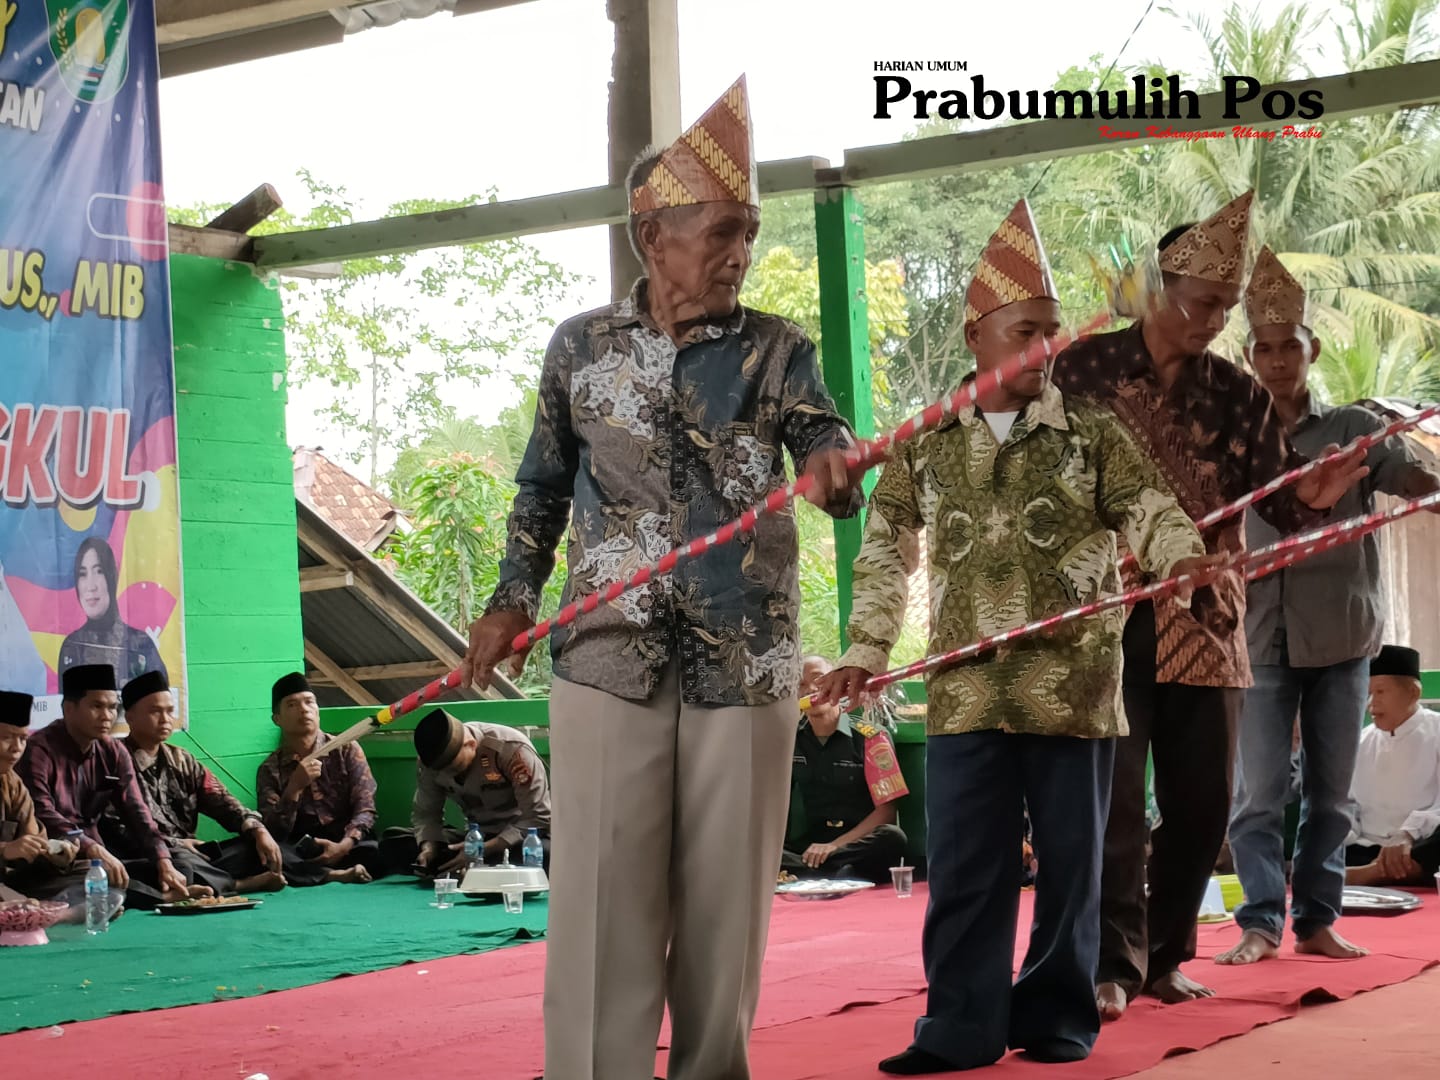 Wajib Tahu, Ini Sedekah Adat Tradisi Turun Menurun di Sumatera Selatan